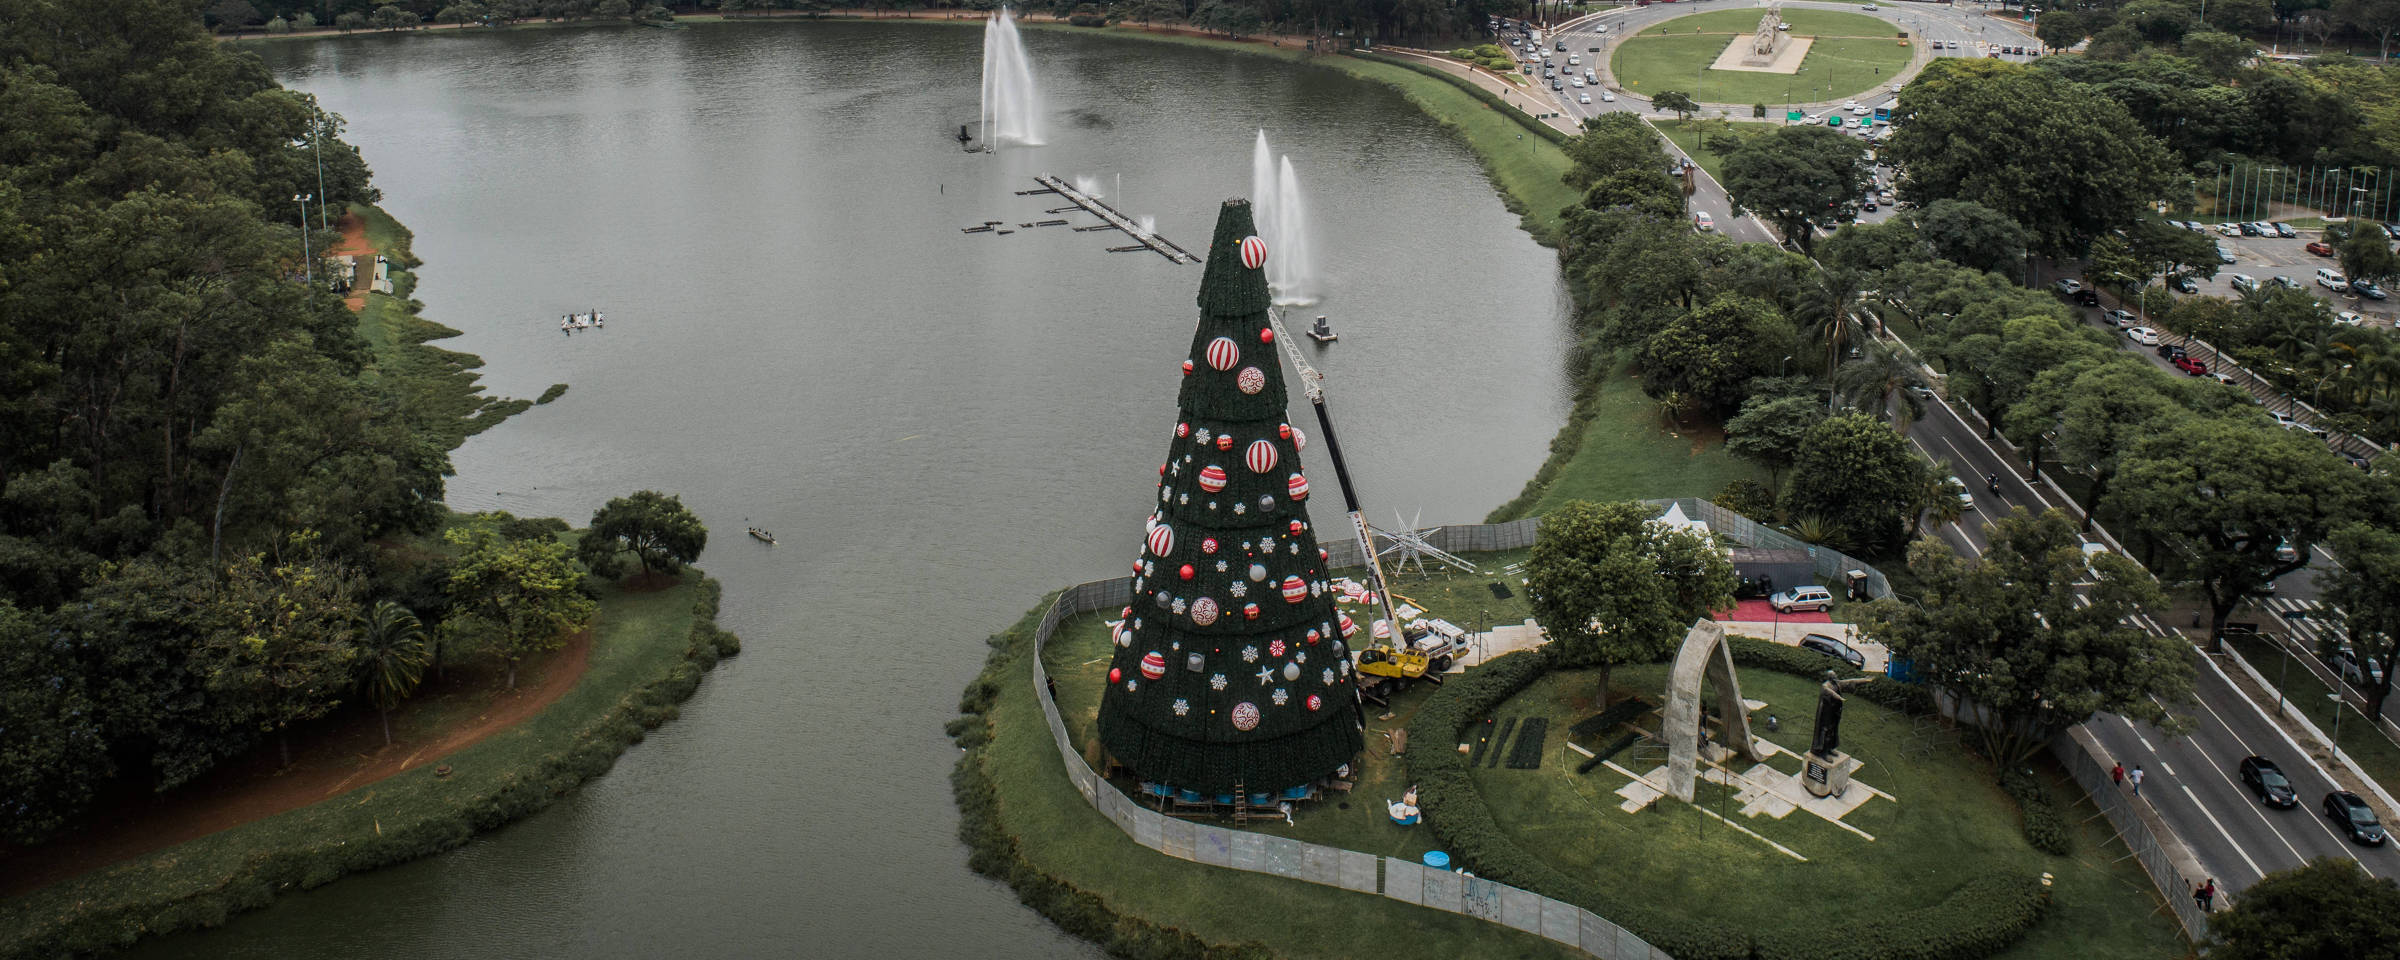 Árvore de Natal do Ibirapuera agora no parque Villa-Lobos